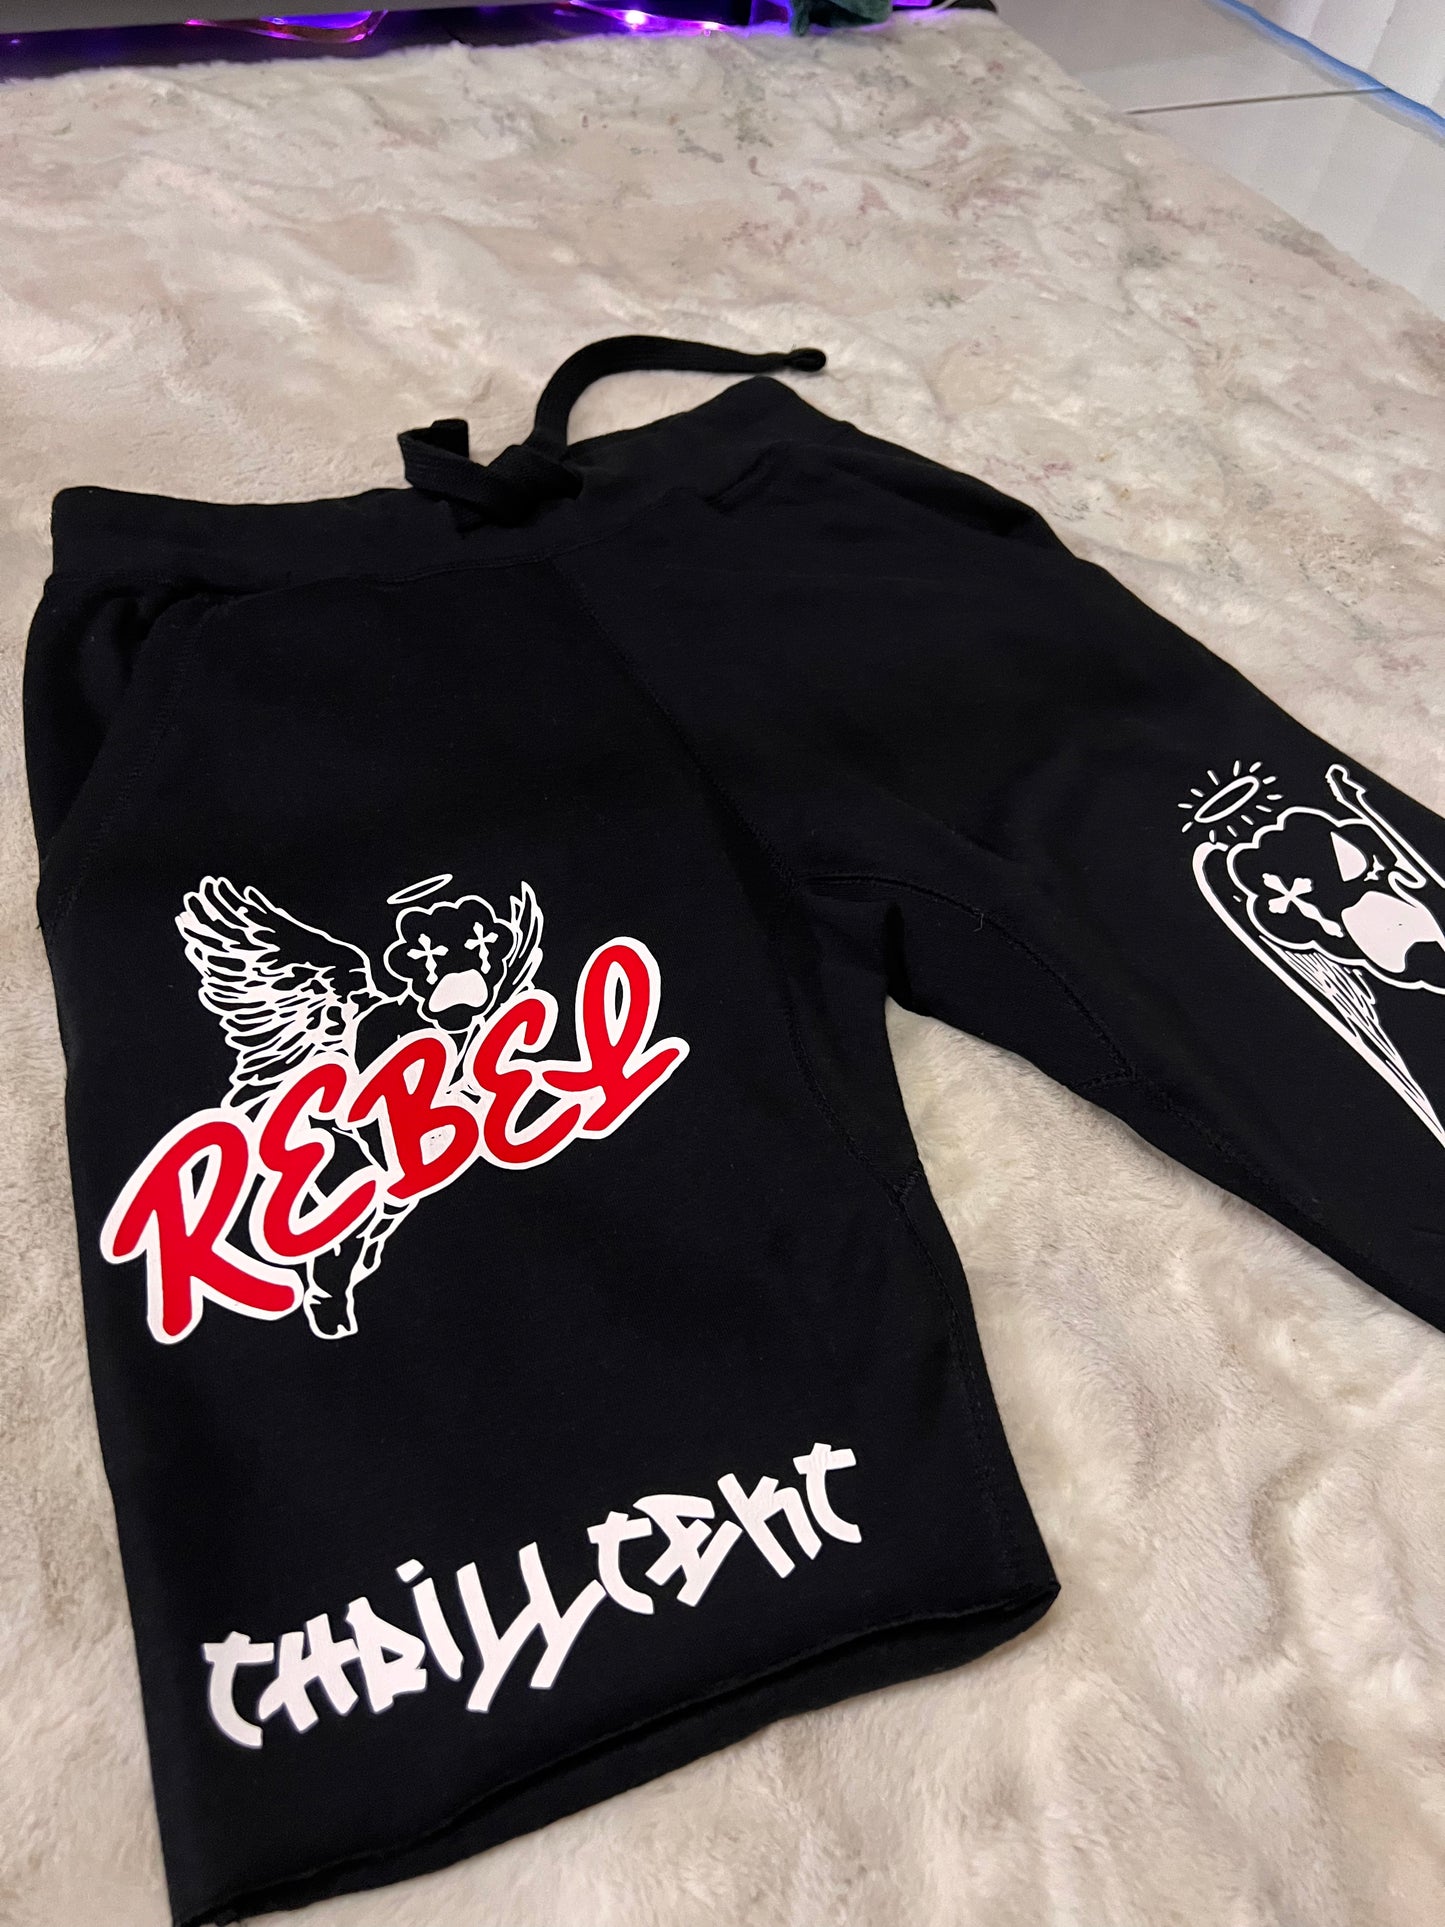 “Rebel Angels” Thrilltekt sweatshorts